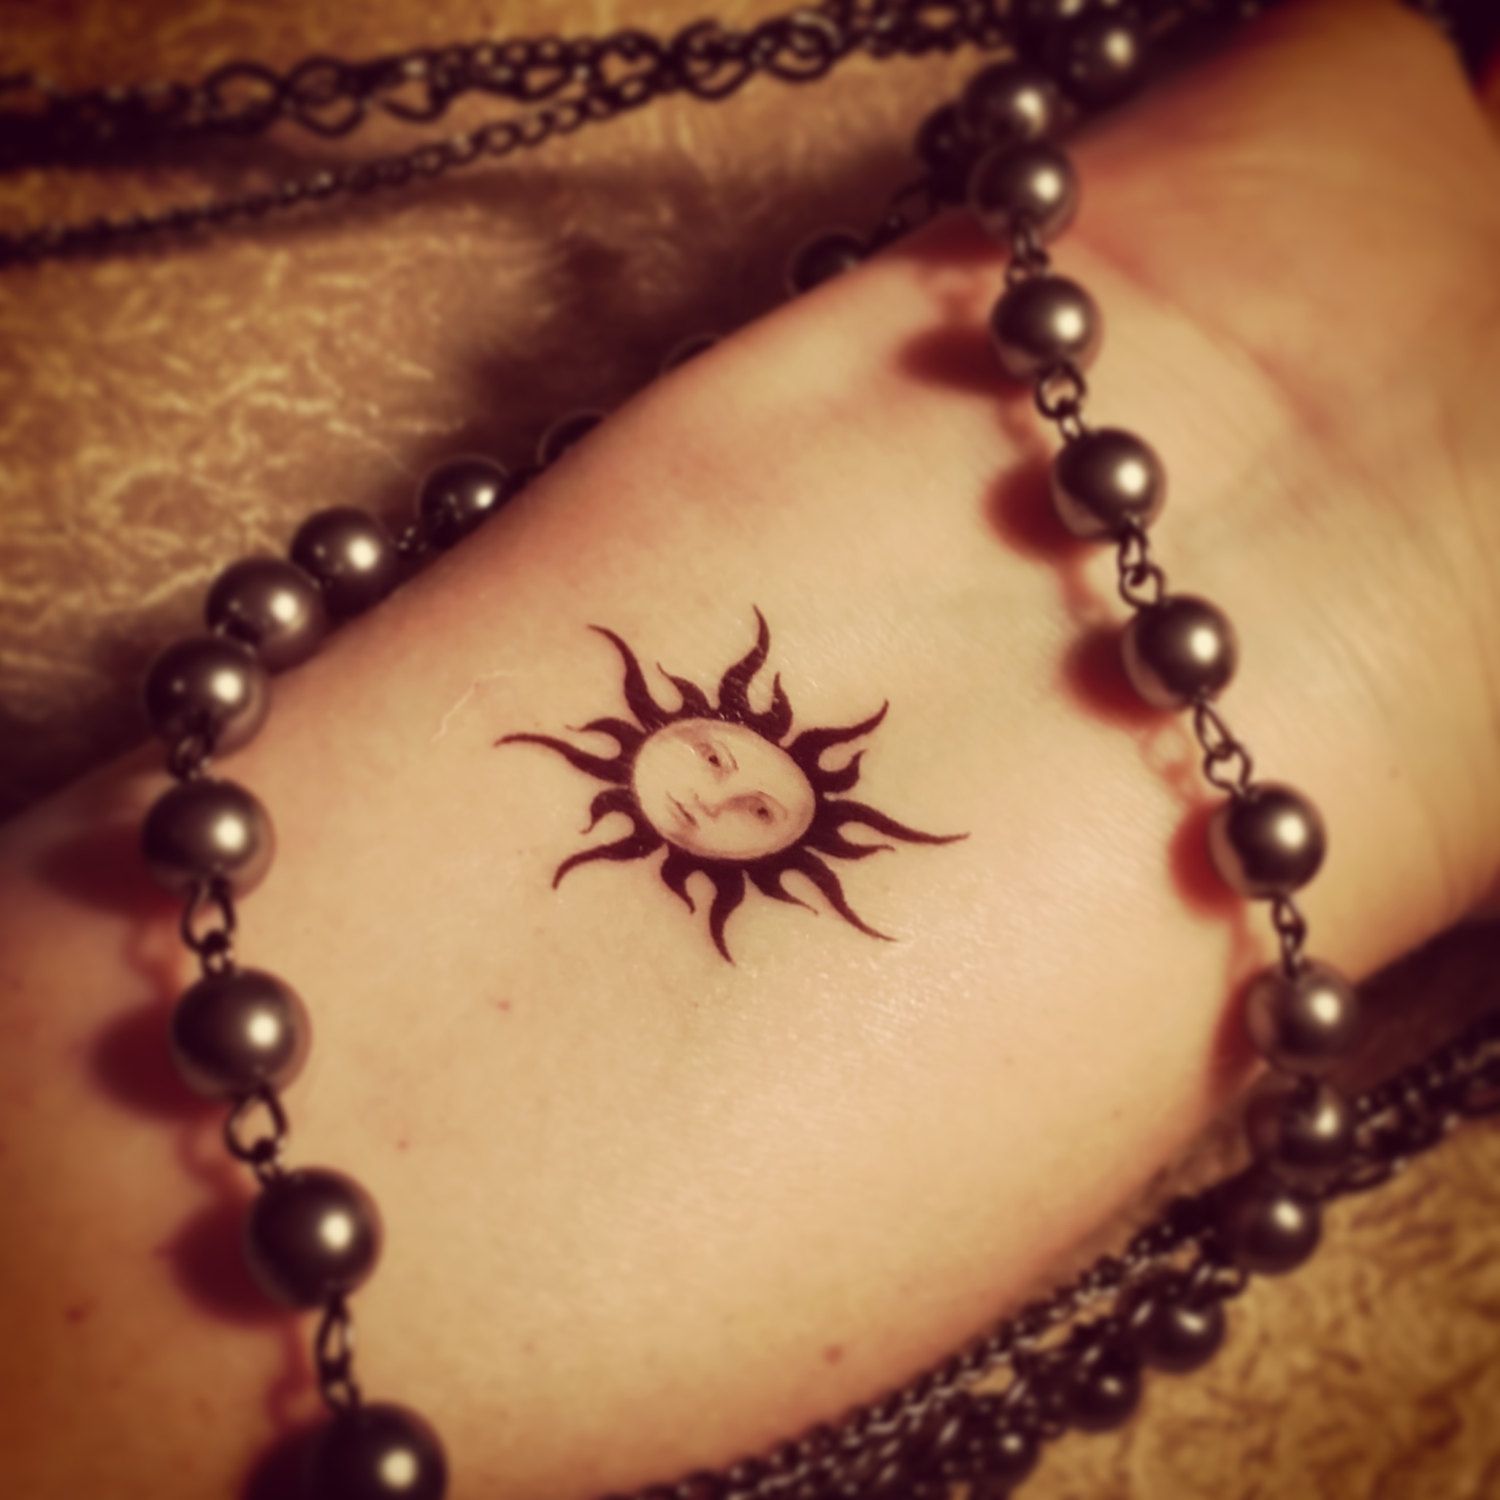 Tribal Small Sun Tattoo On Wrist